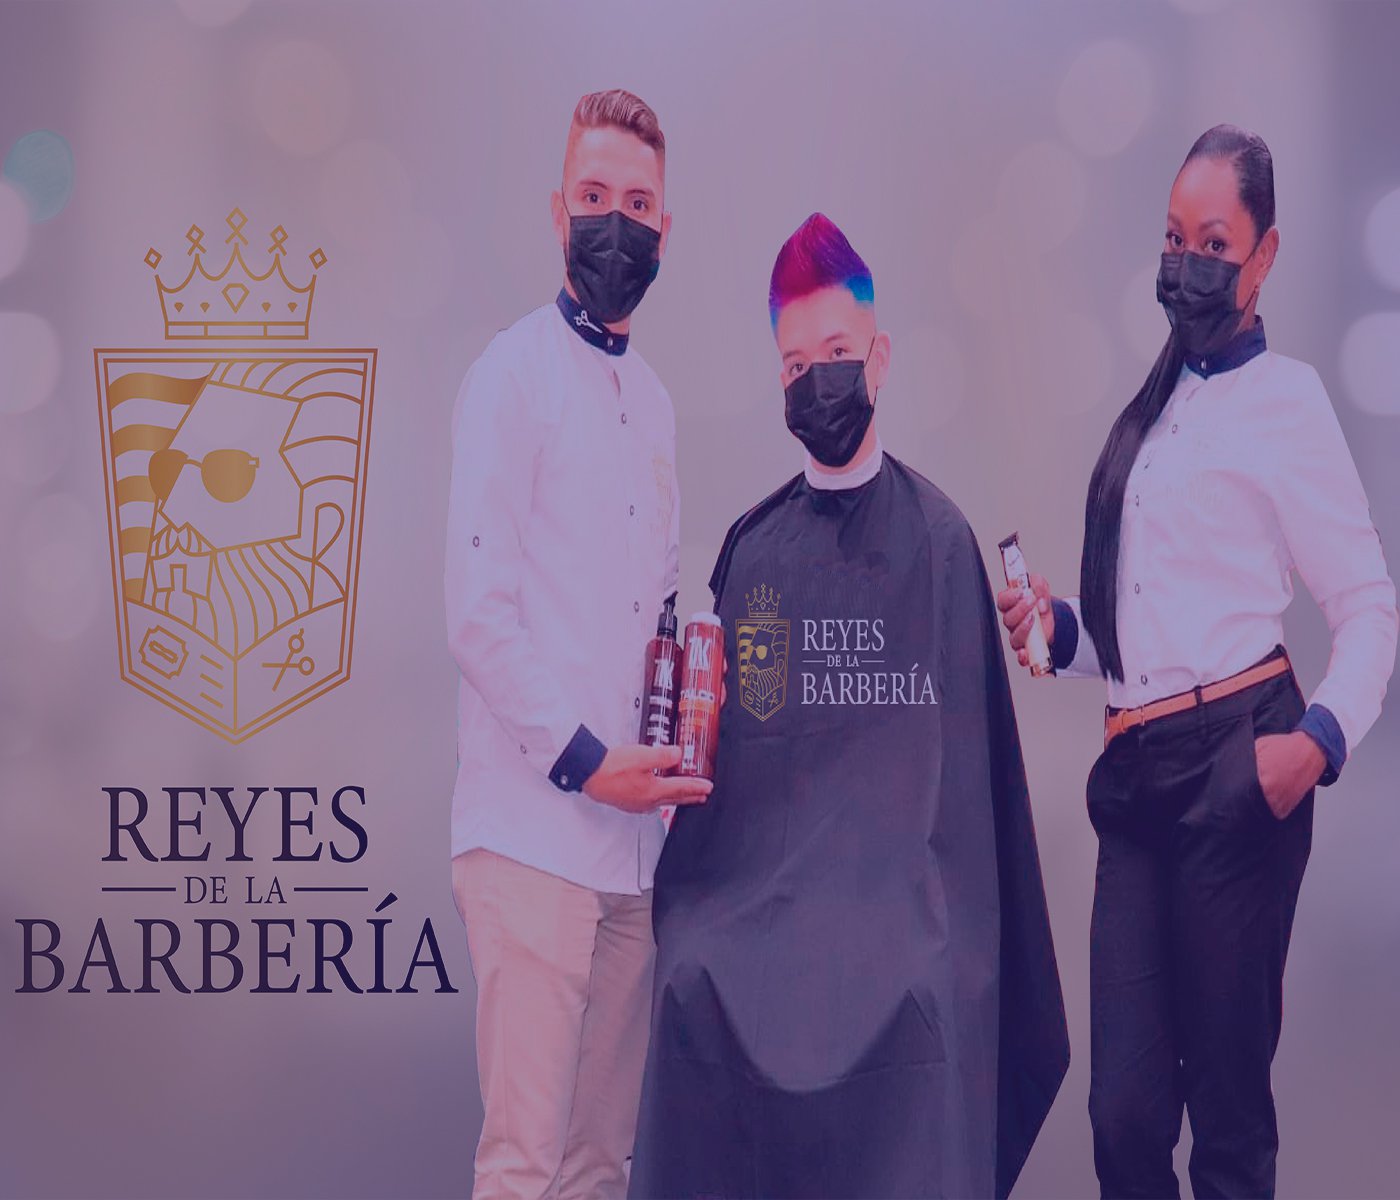 Reyes de la Barberia portada 350x300 2.0 lila.jpg